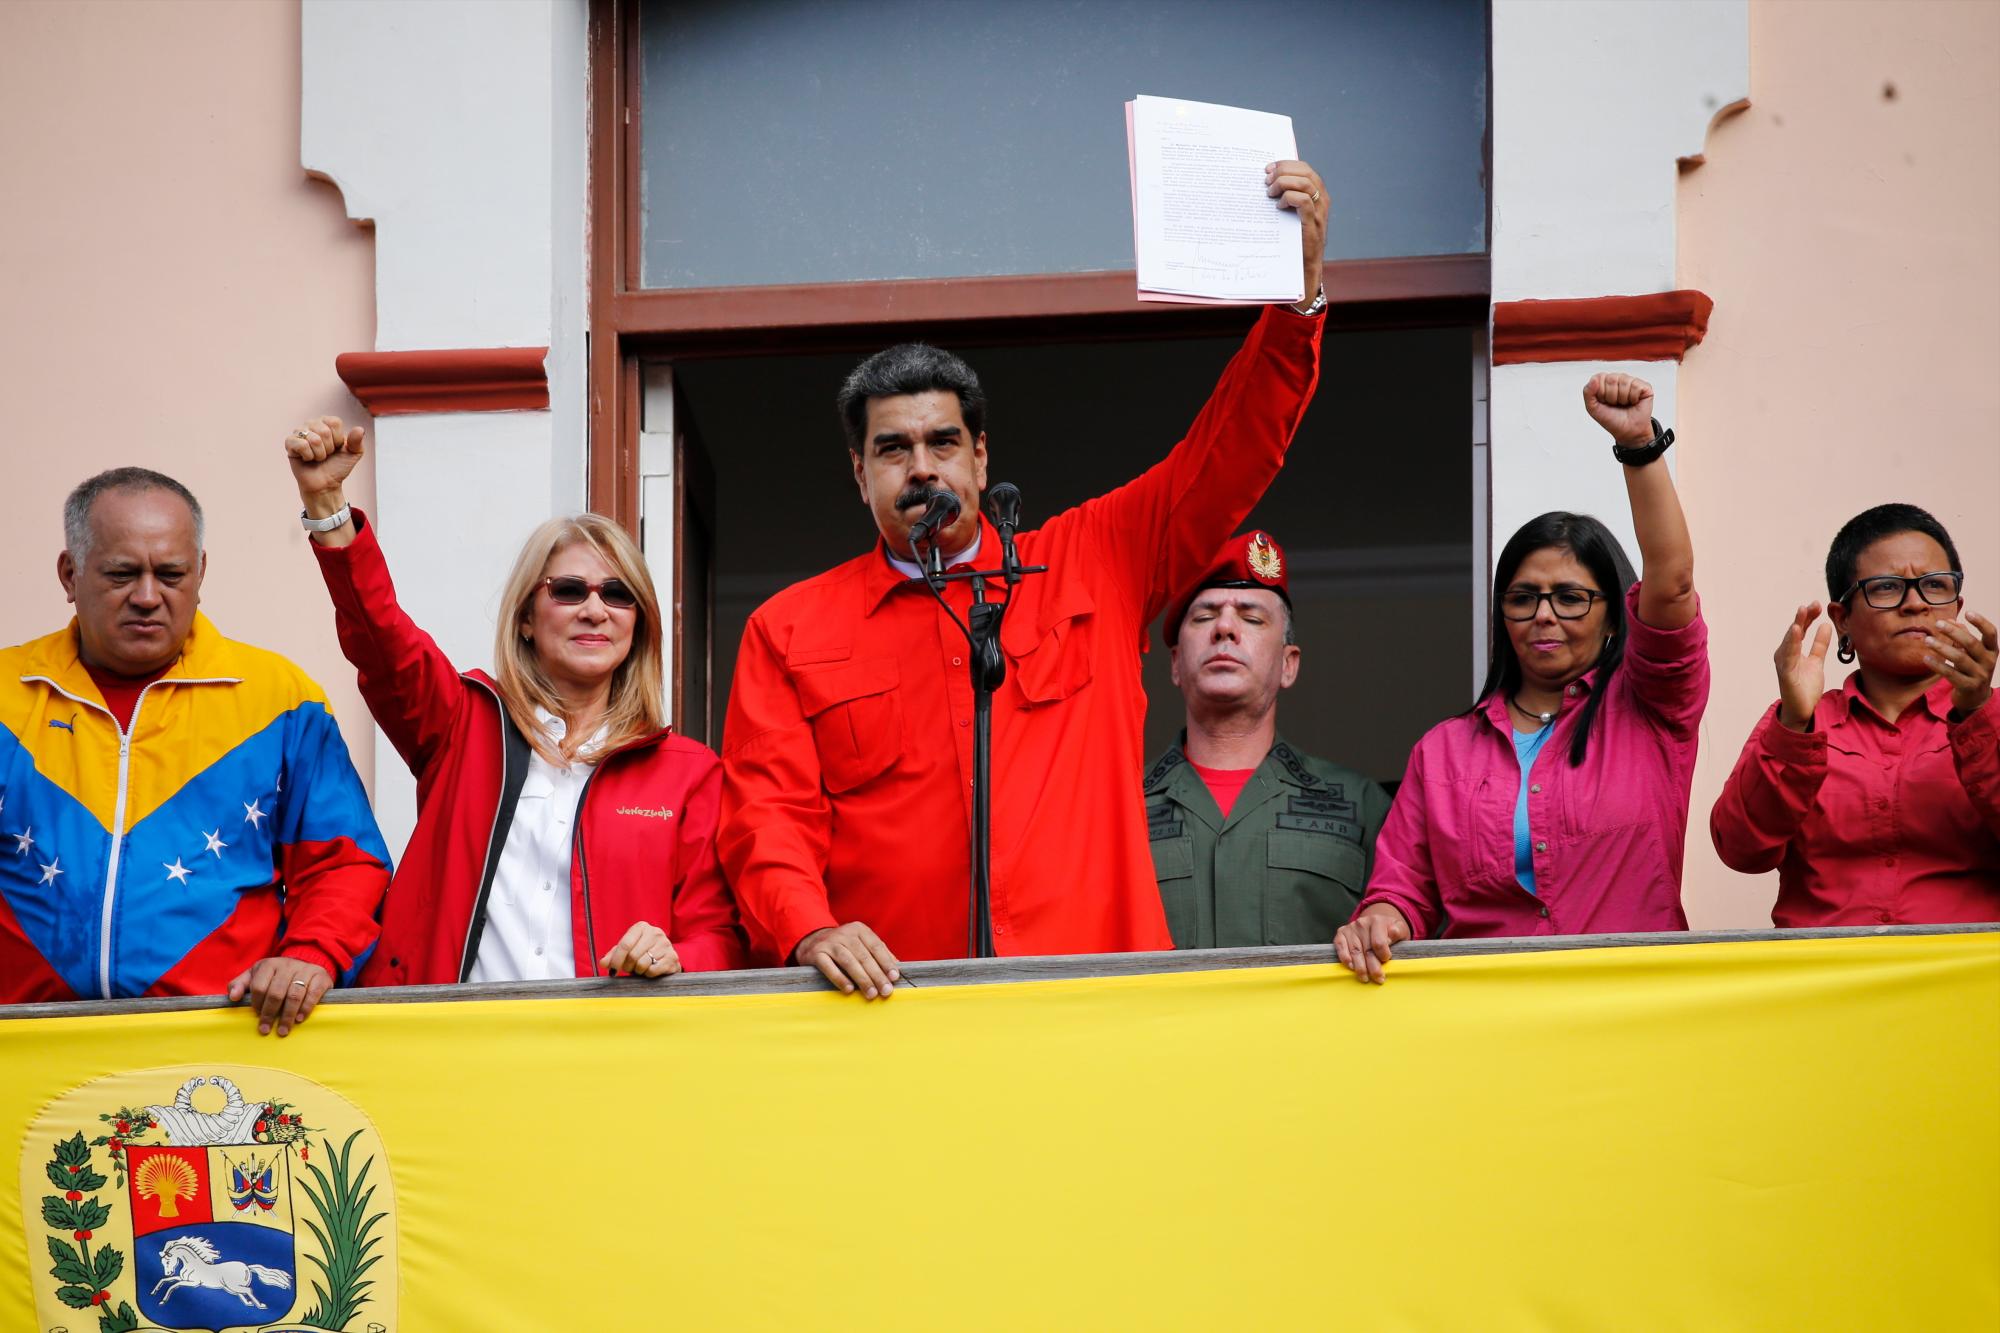 El presidente venezolano Nicolás Maduro anuncia que rompe relaciones diplomáticas con Estados Unidos frente a sus simpatizantes desde un balcón del palacio de gobierno en Caracas, Venezuela, el miércoles 23 de enero de 2019.